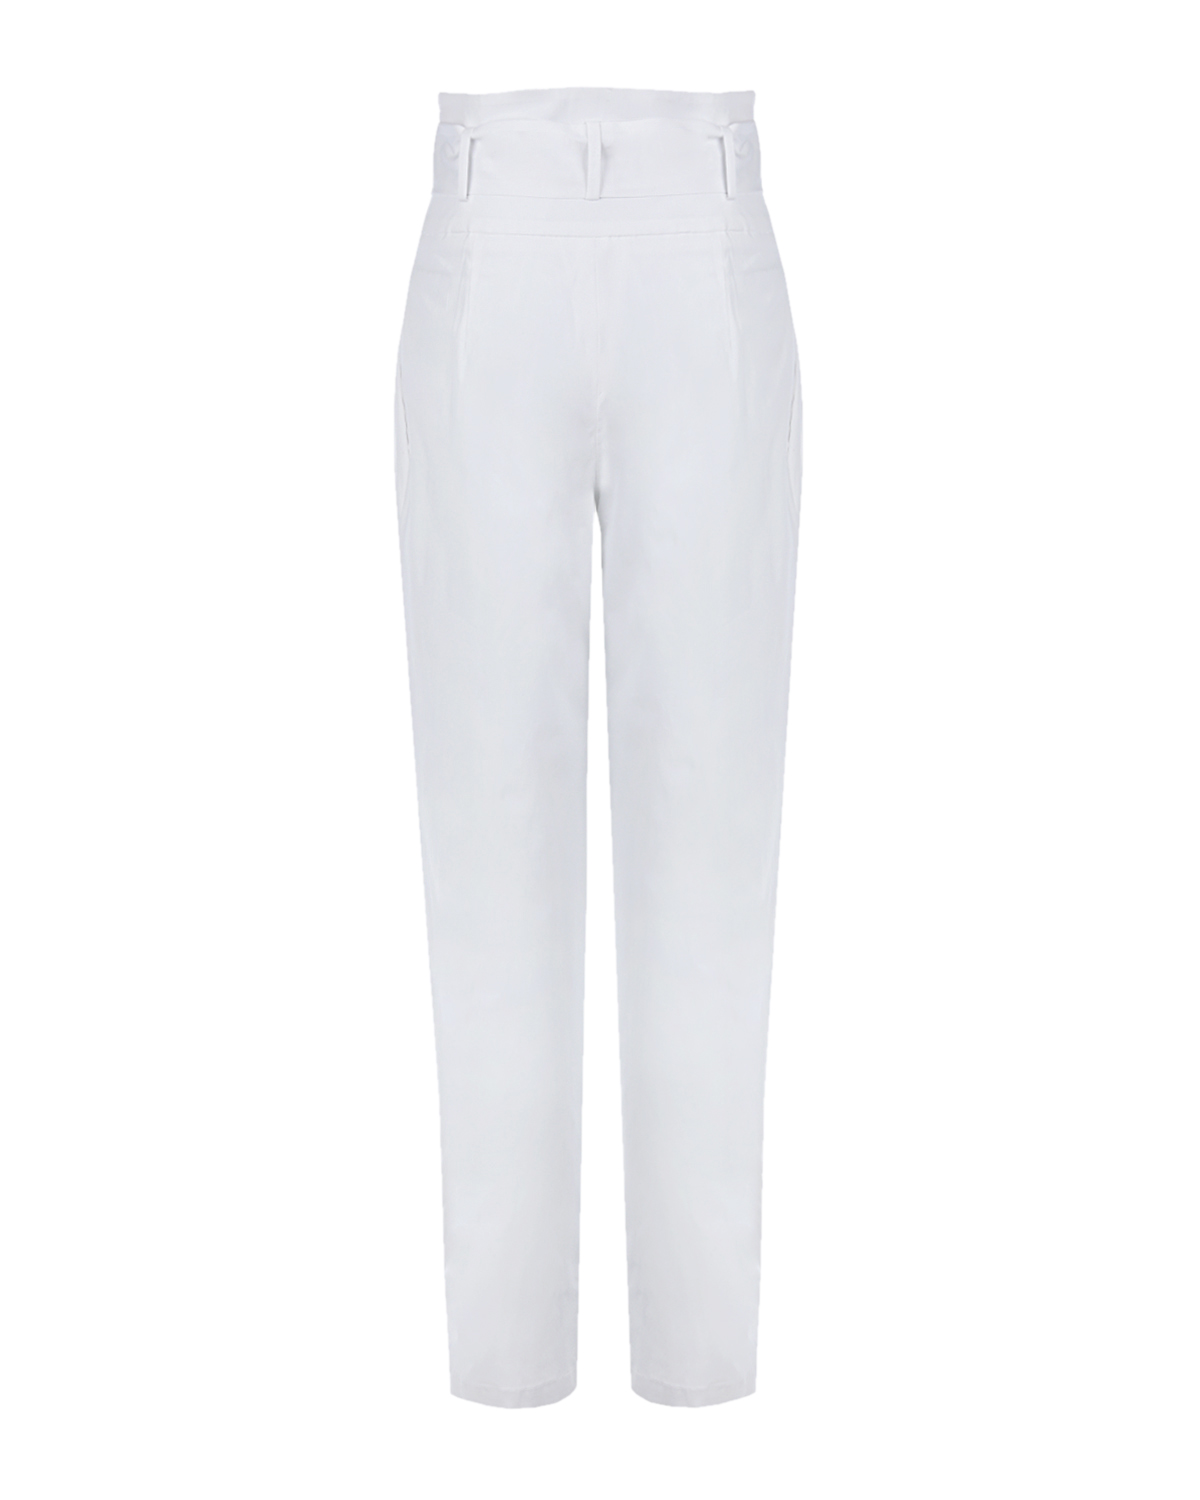 Белые брюки с поясом Sara Roka, размер 40, цвет белый - фото 2